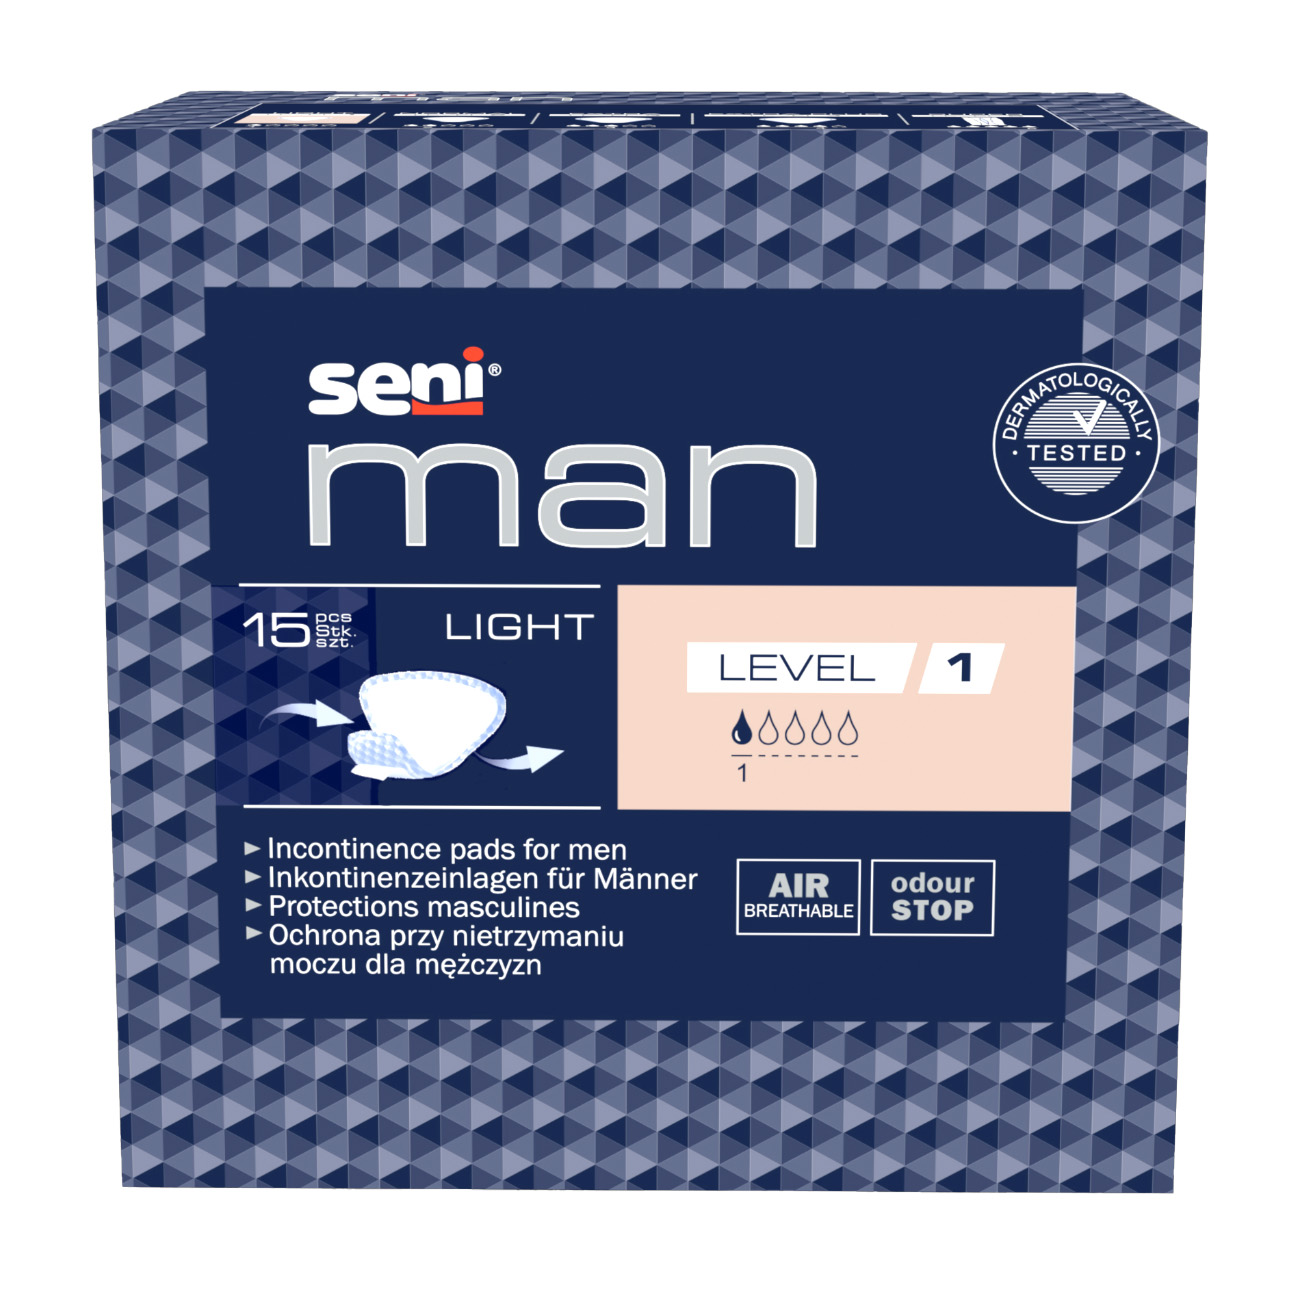 Seni Man Light Level 1 Inkontinenzeinlagen